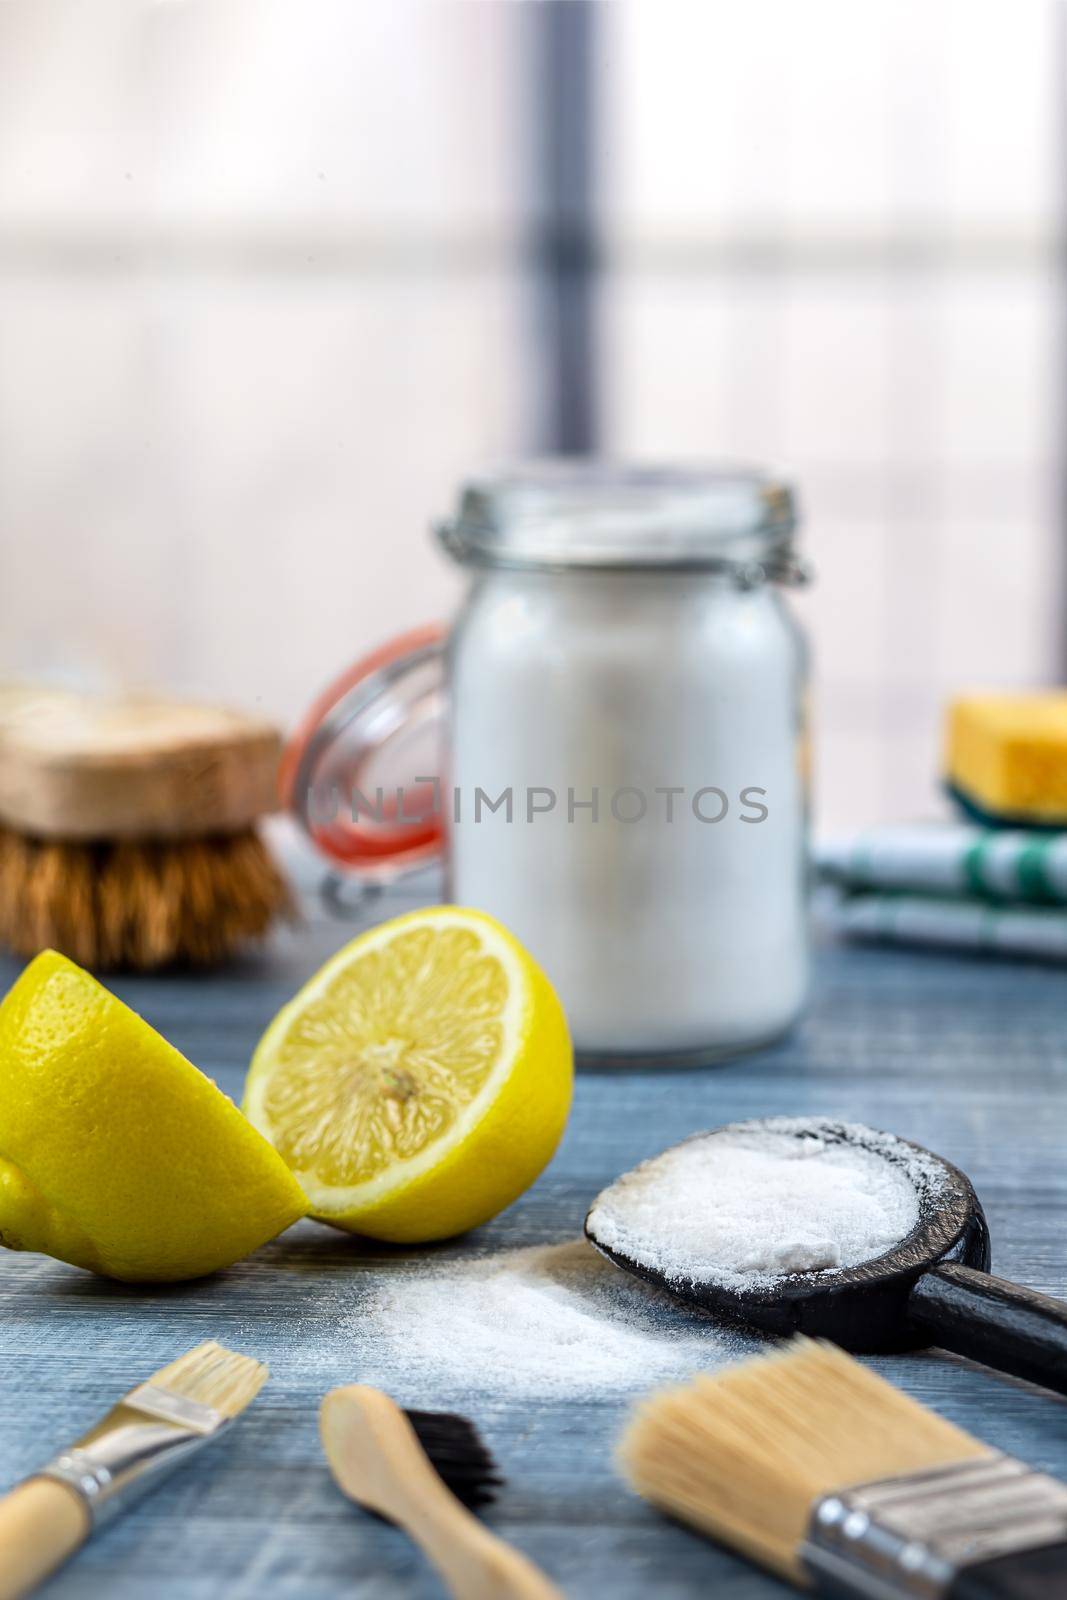 Small pile of bicarbonate in the center of lemon, brushes, sponge, brush